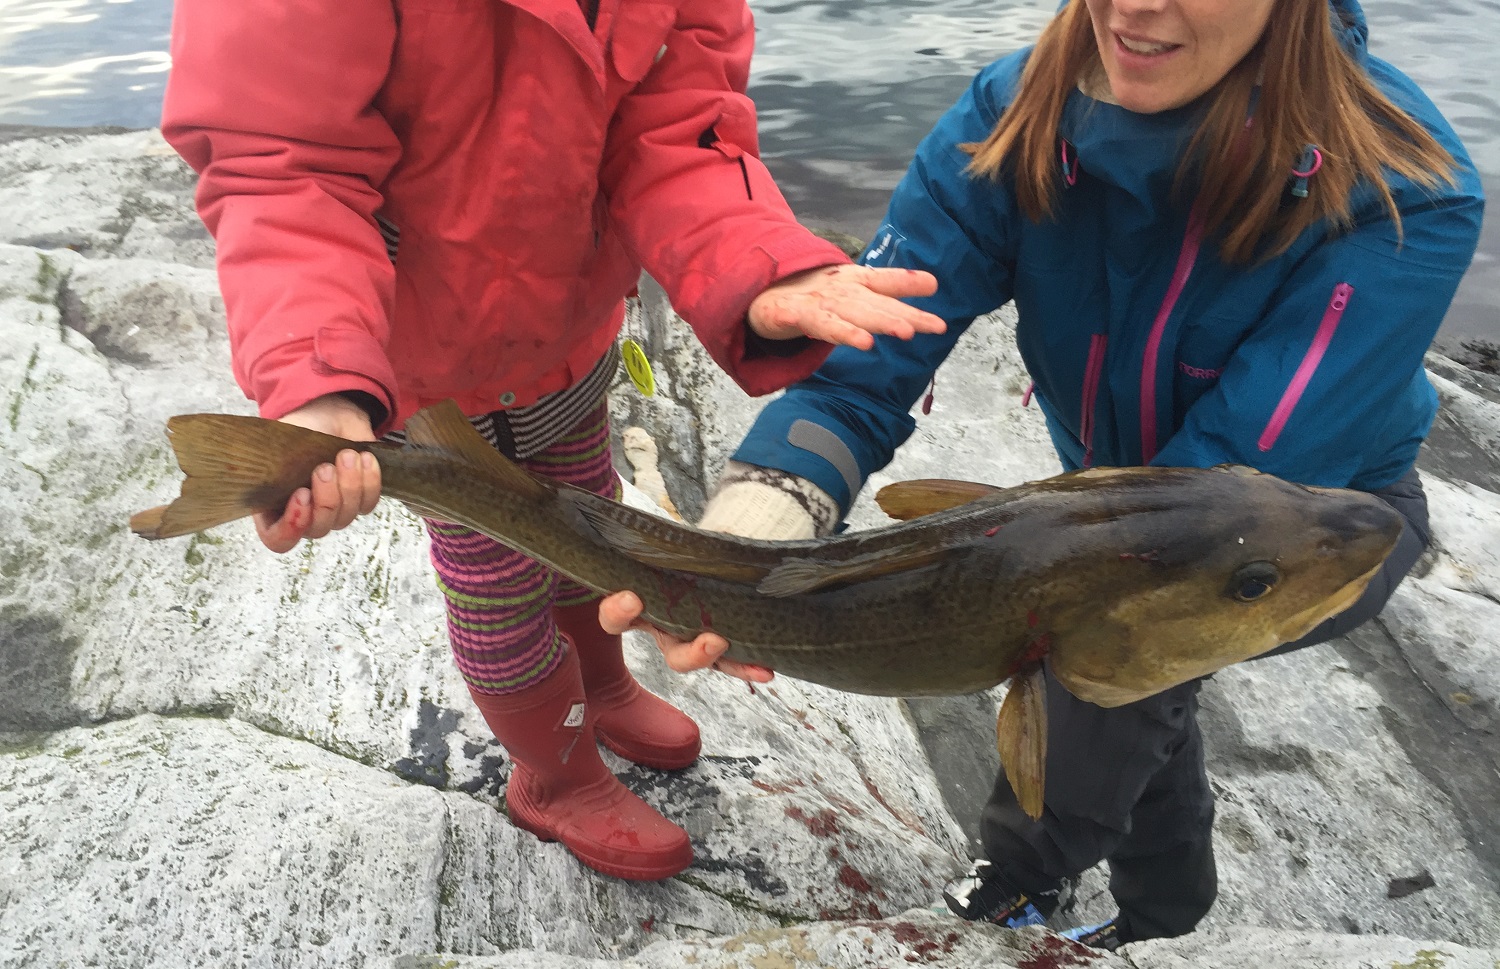 Muligheten for storfangst gjør fritidsfiske ekstra spennende. Foto: Anders Røeggen.